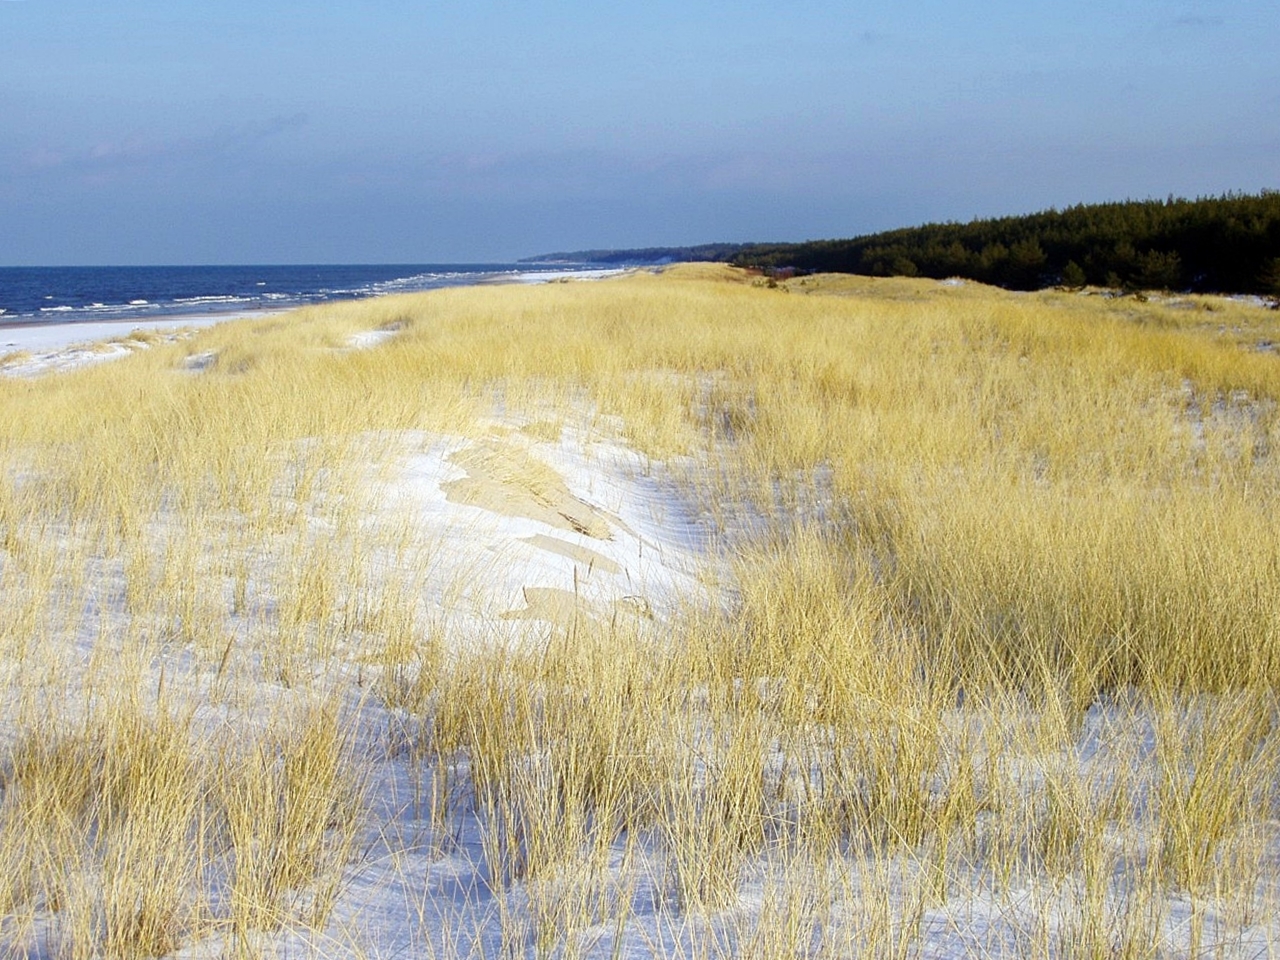 Zdjęcie wydmy białej, pokrytej cienką warstwą śniegu, porośniętej pożółkłą trawą – piaskownicą zwyczajną.